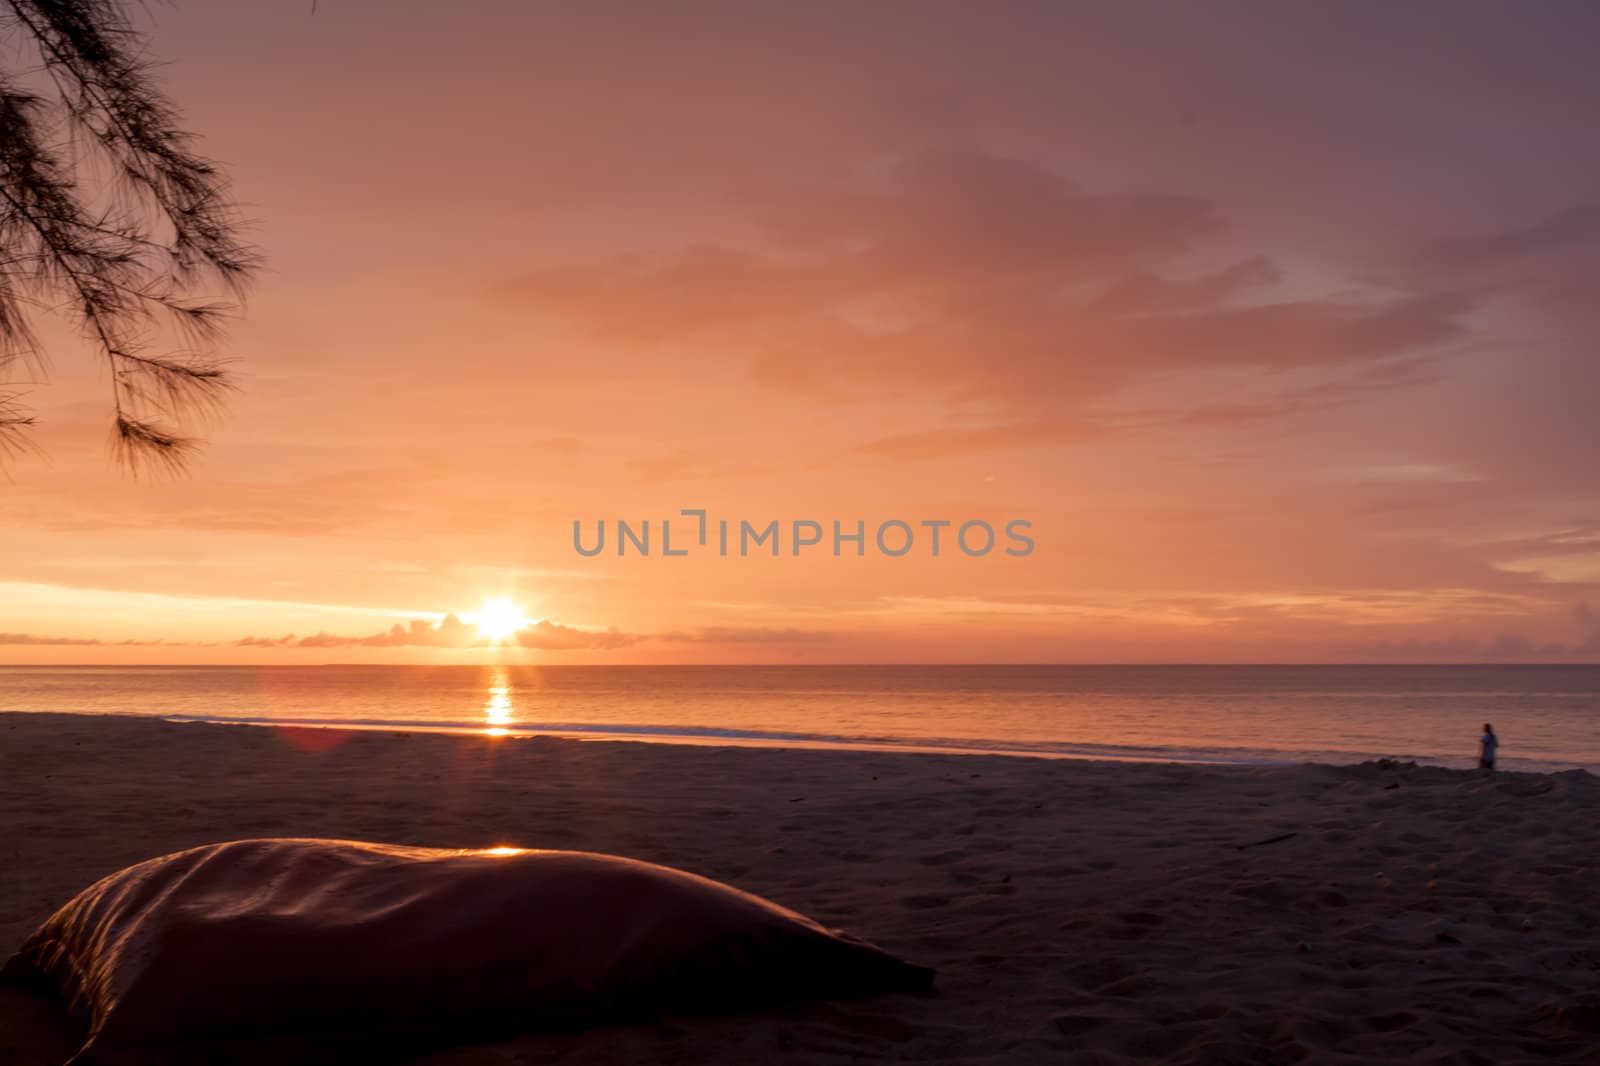 Sunset on beach by sriharun